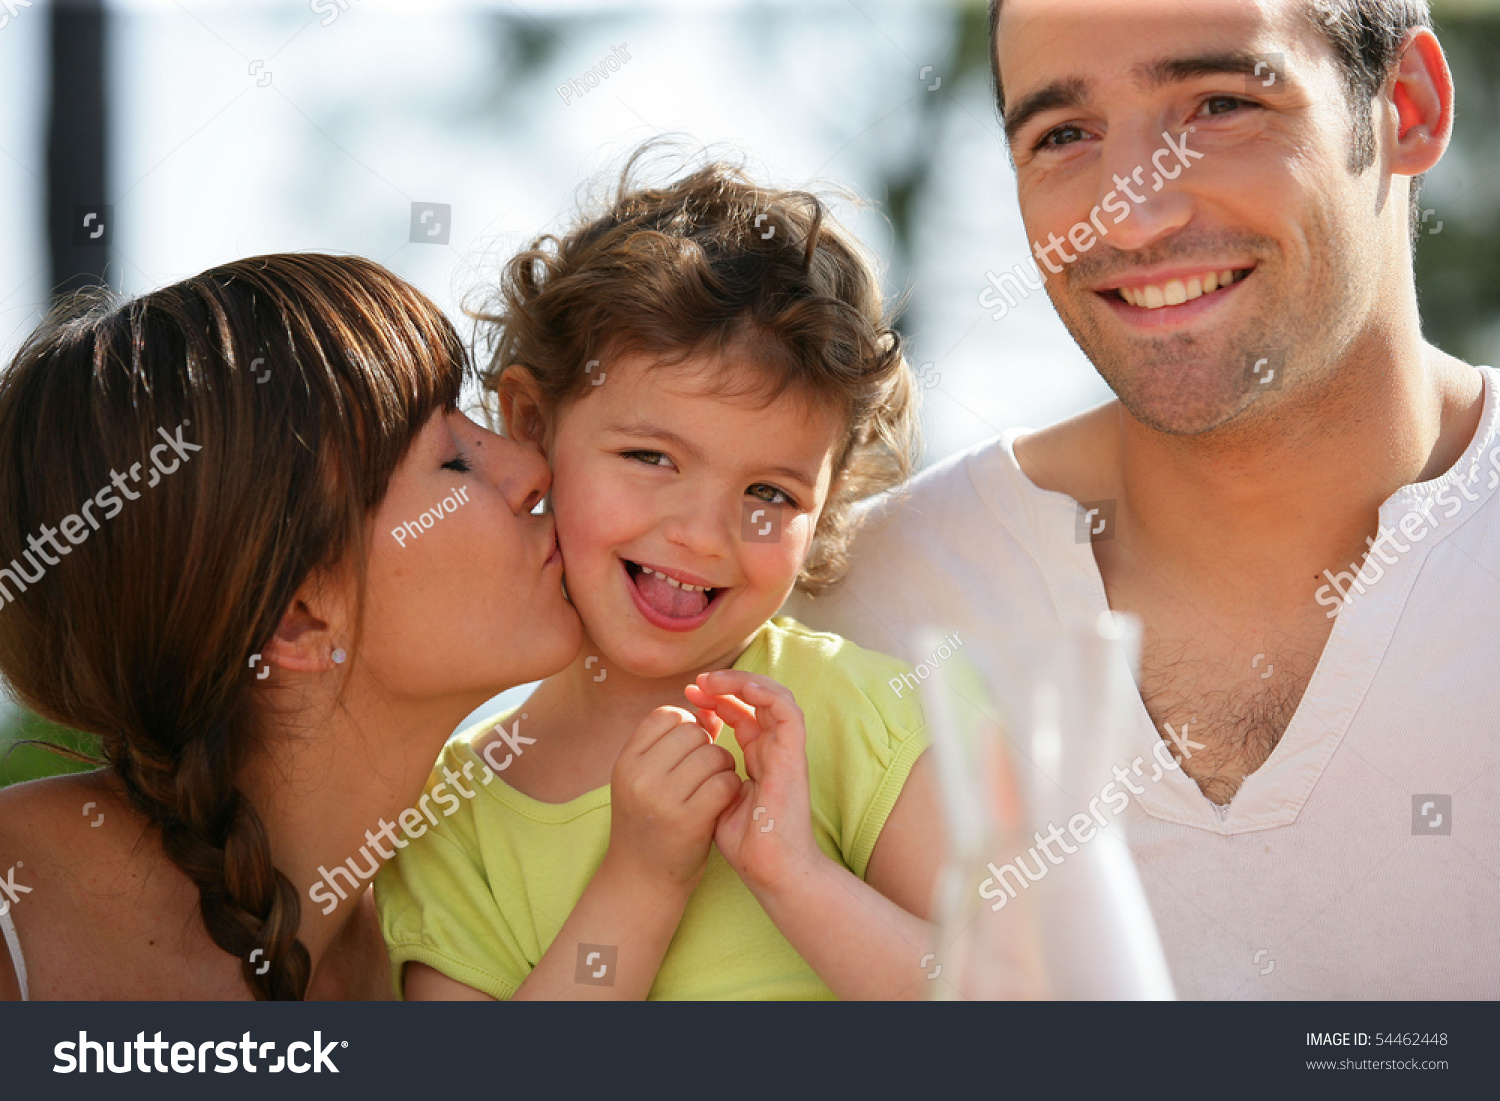 Мужчина с бывшей женой и ребенком. Портрет счастливой семьи. Счастливая семья ребенок усыновленный. Фотообои семья. Фото родителей целующих детей.